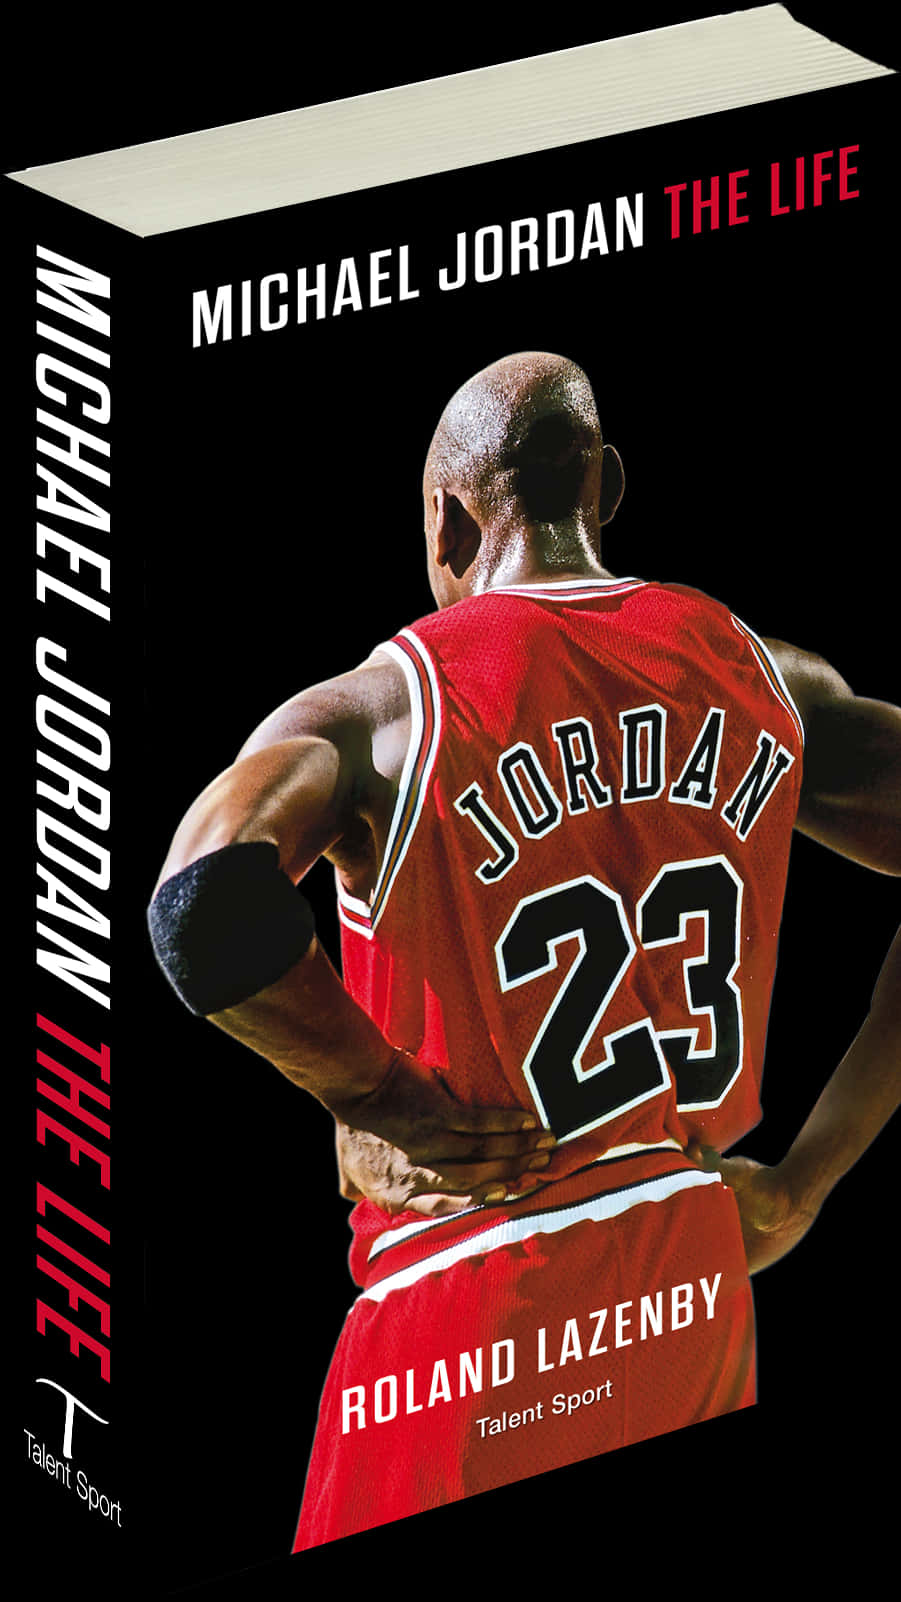 Michael Jordan The Life Book Cover